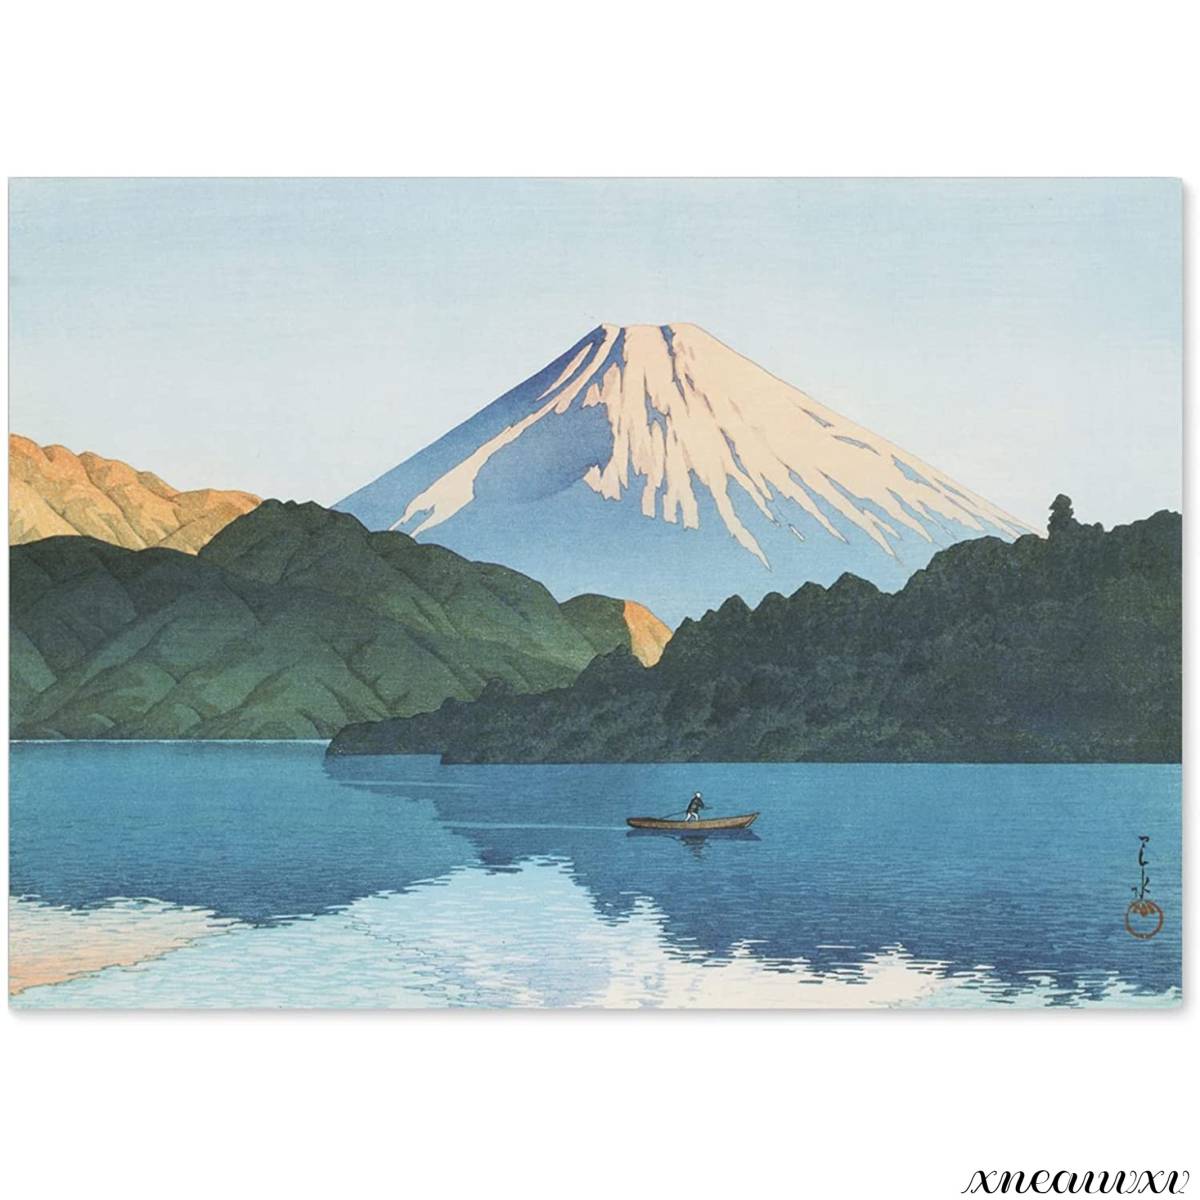 Kawase Hasui Hakone Lake Ashi Impression fabriquée au Japon Taille A3 Reproduction Peinture Paysage Intérieur Tenture Murale Décoration de Chambre Affiche d'art décoratif, Peinture, Ukiyo-e, Impressions, Peintures de lieux célèbres